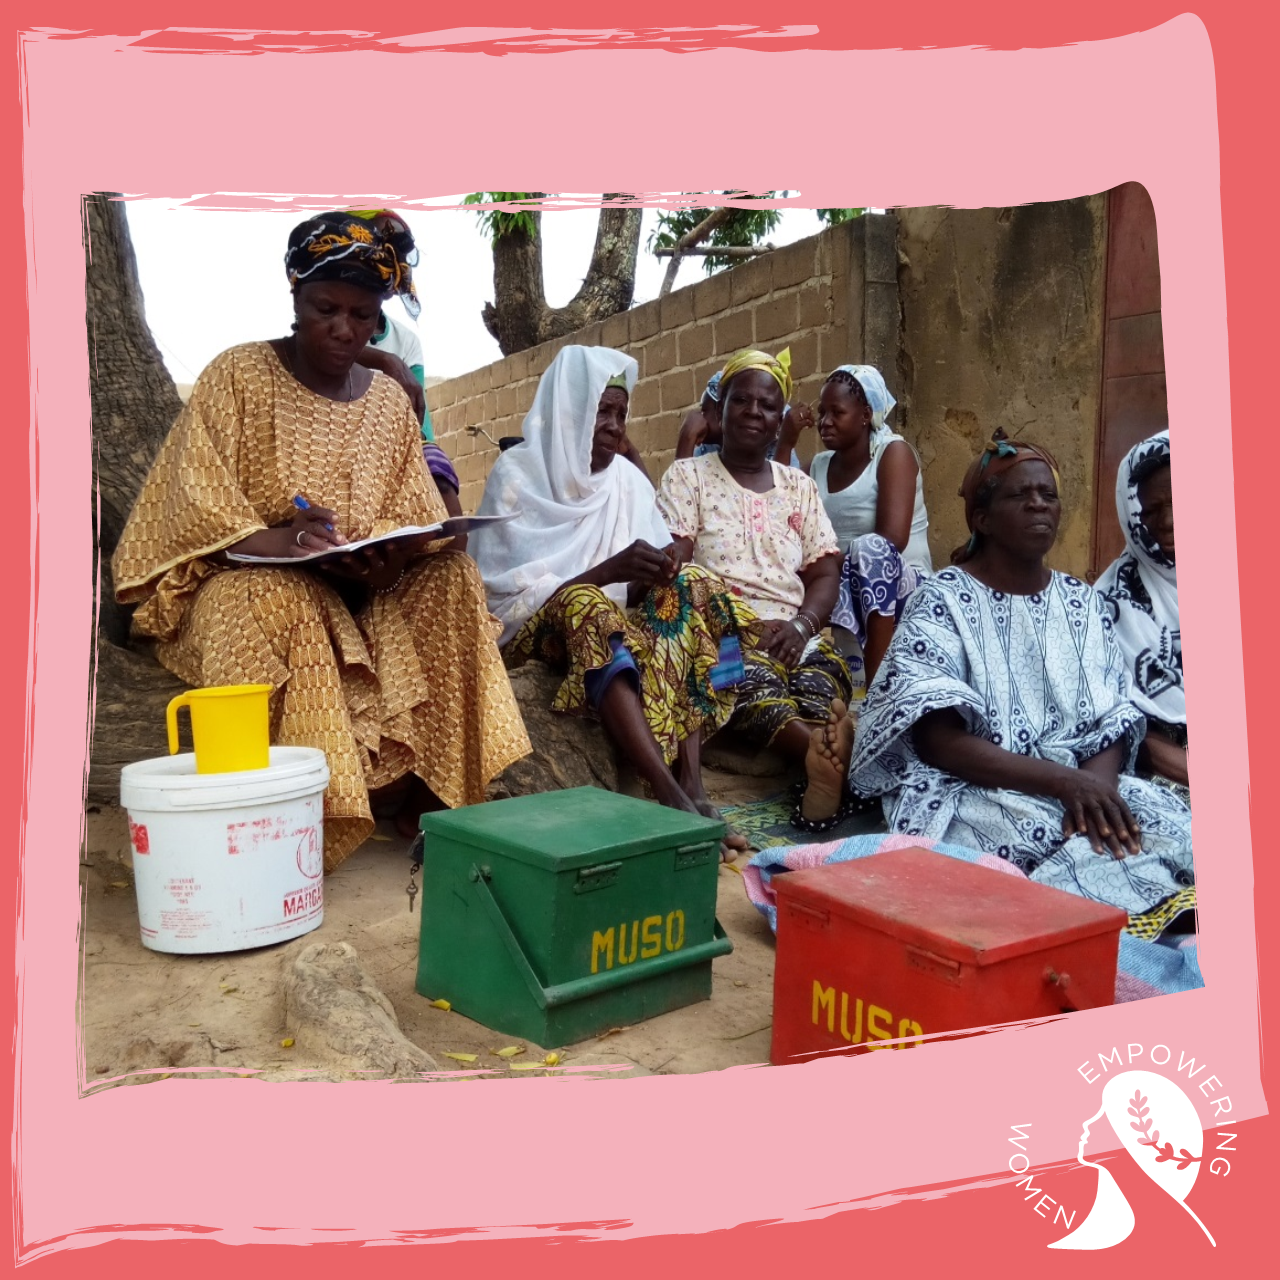 Depuis 2009, la Fondation soutient le projet de microfinance sociale de l’ONG Entrepreneurs du Monde. Un projet qui met à la disposition de femmes rurales des crédits adaptés et des formations sur des thématiques socioéconomiques. Plus de 24 000 femmes ont bénéficié de ce projet. 